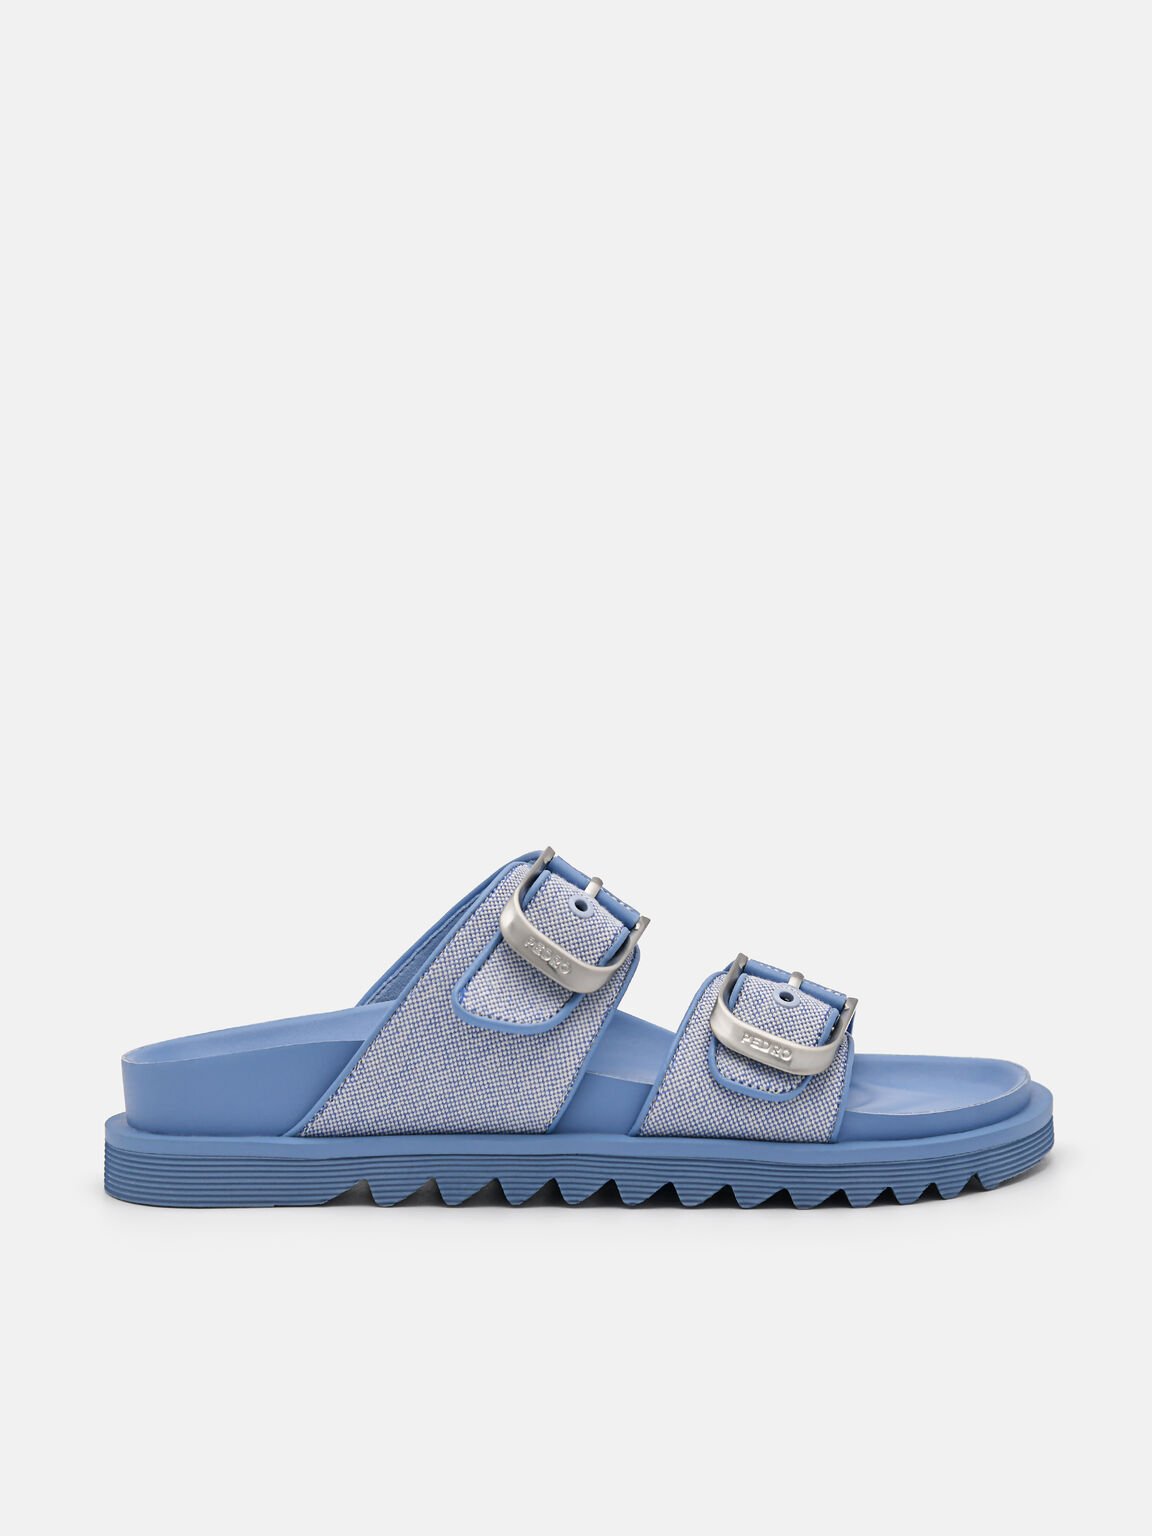 Helix Sandals, Blue